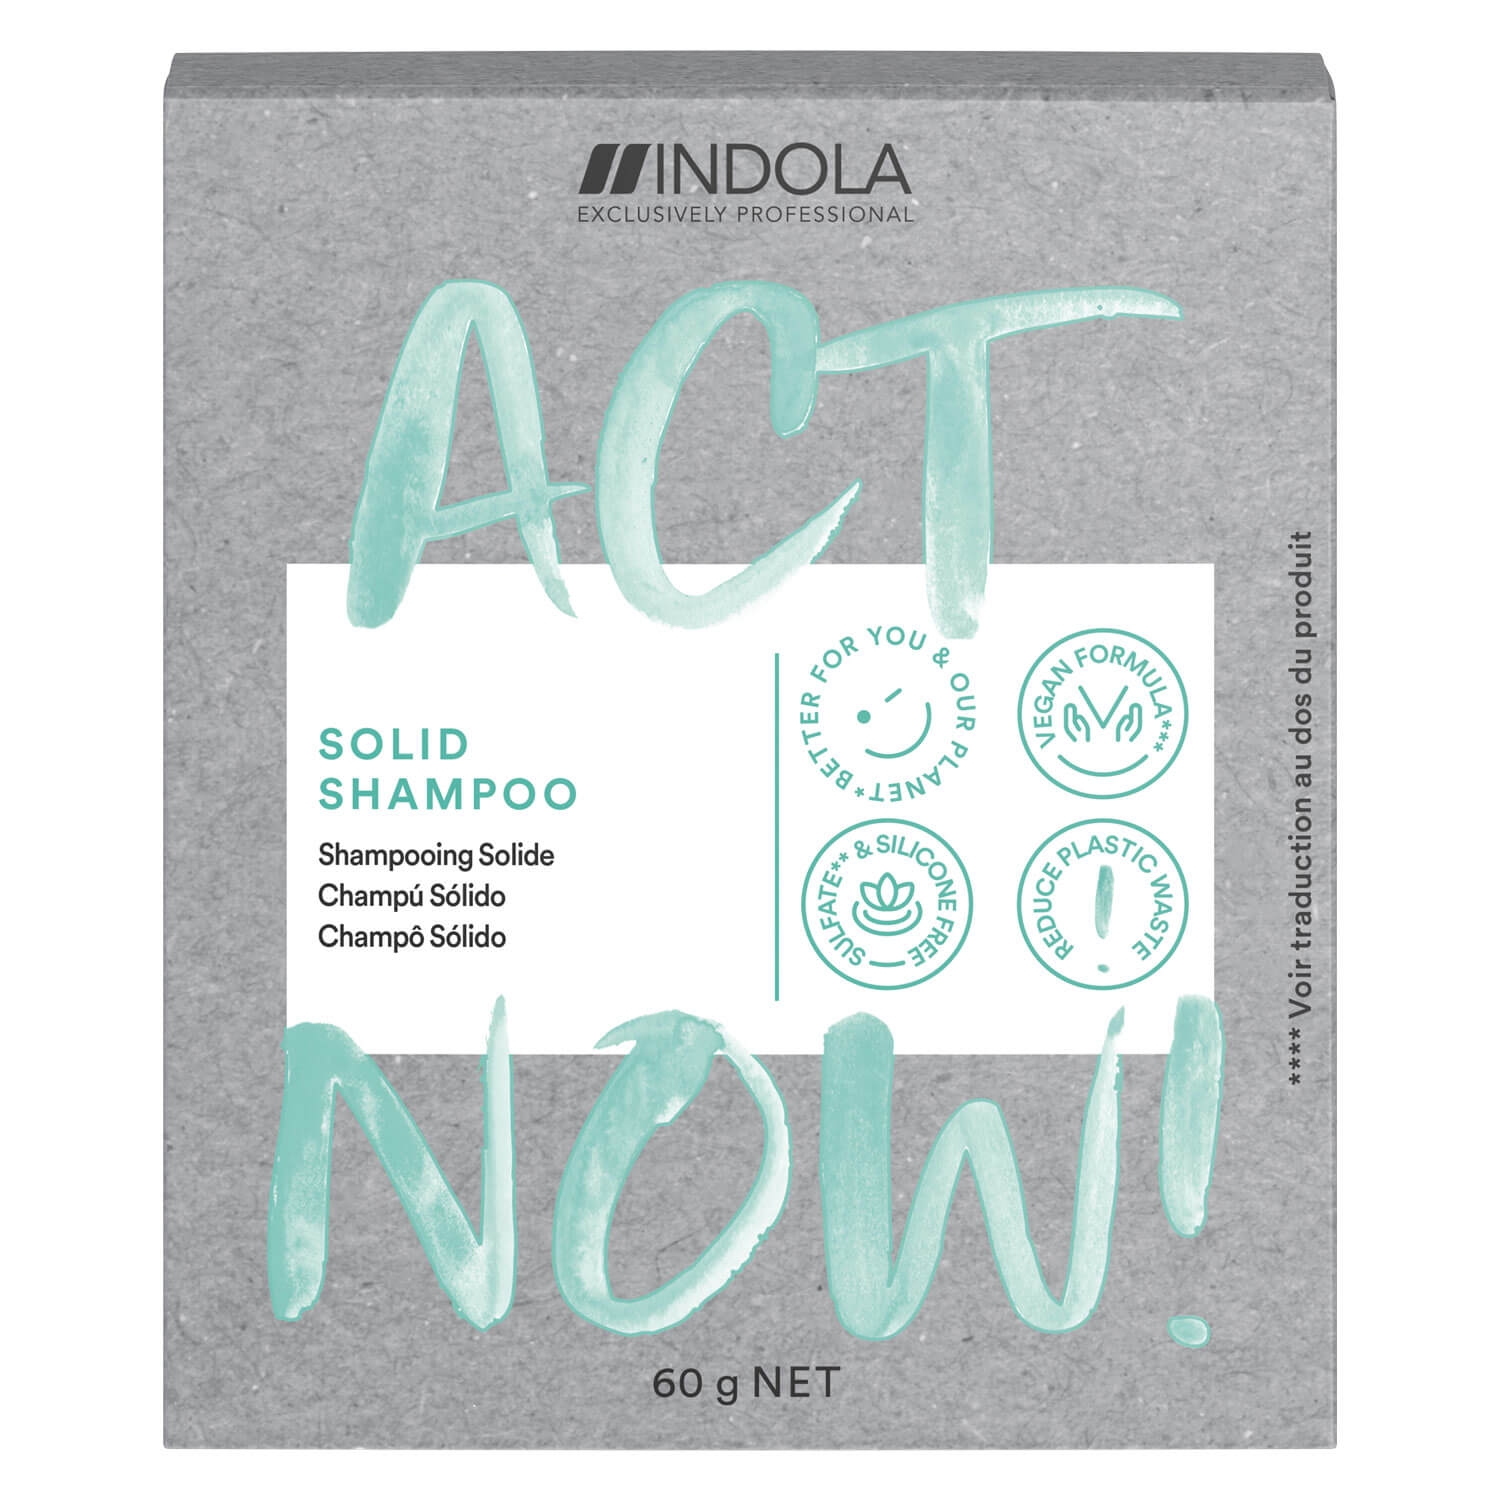 Produktbild von ACT NOW - Solid Shampoo